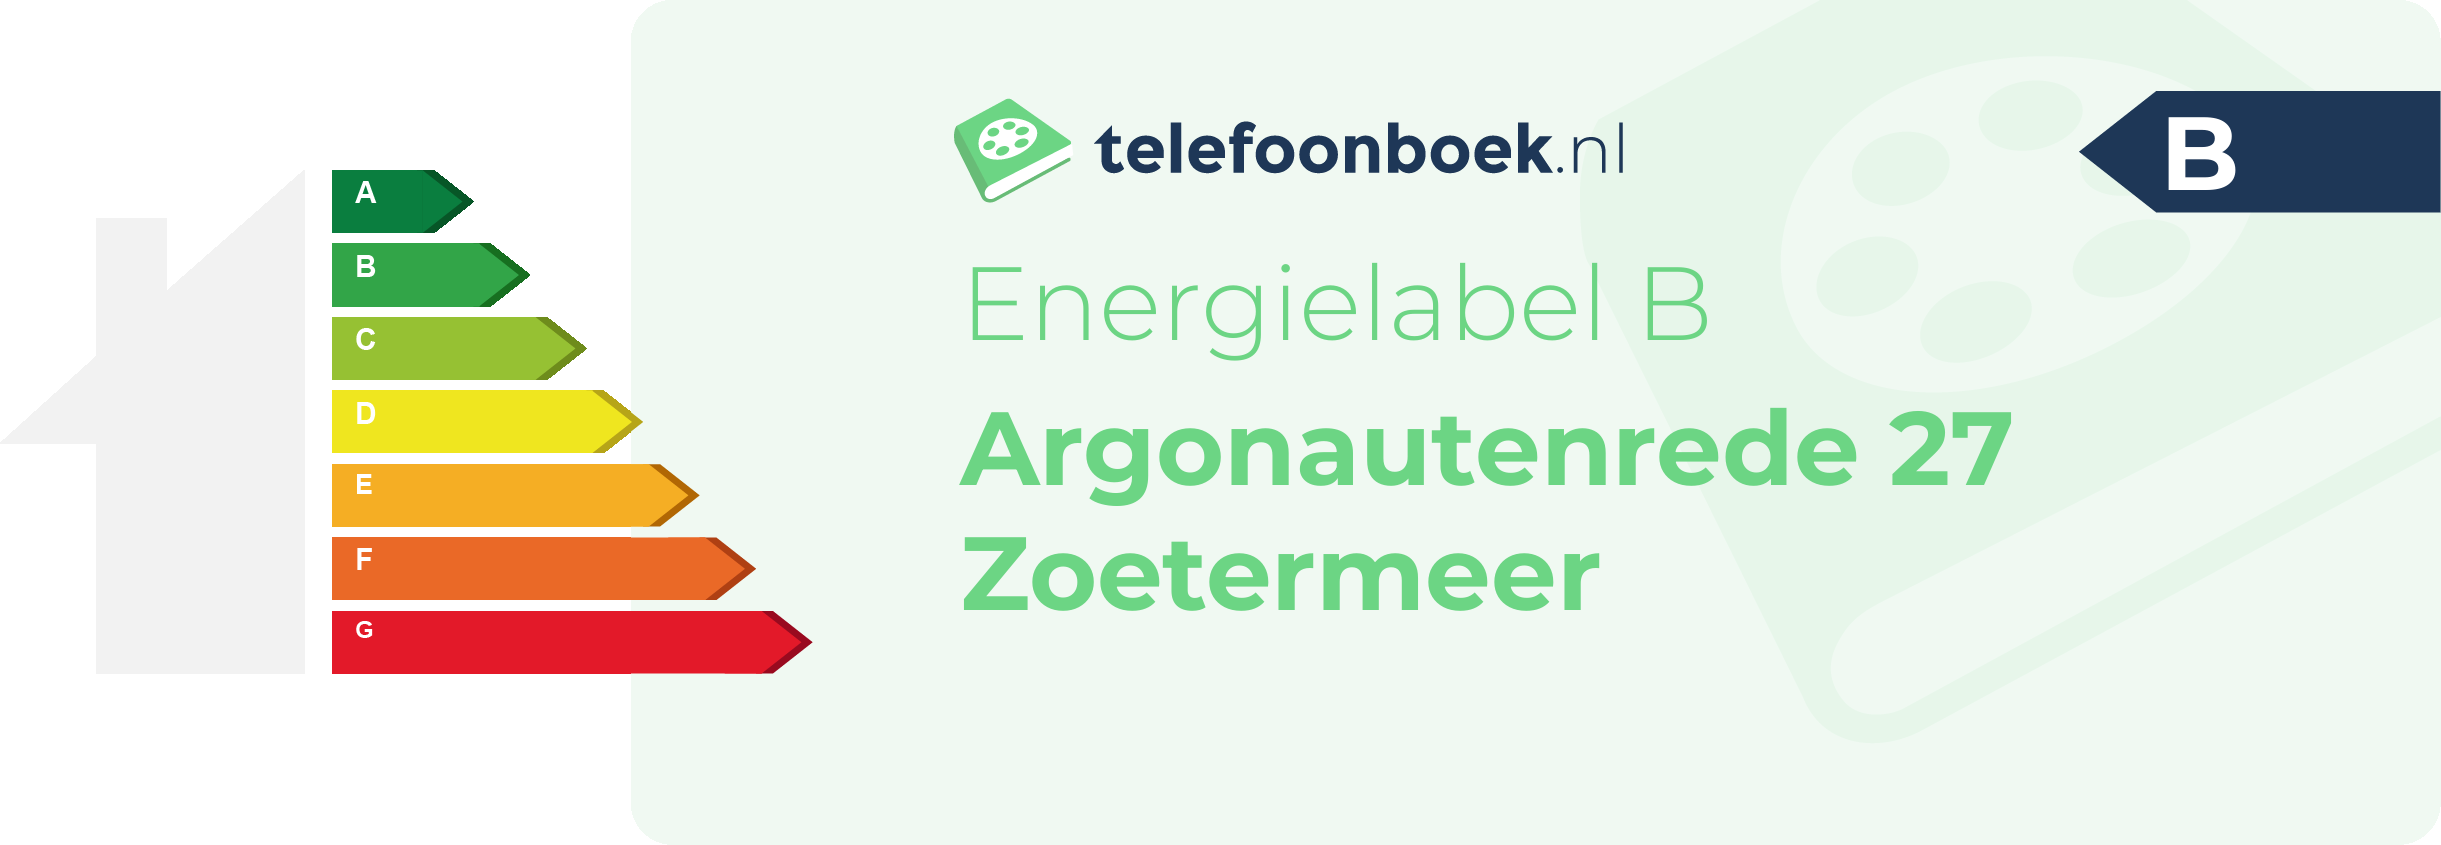 Energielabel Argonautenrede 27 Zoetermeer